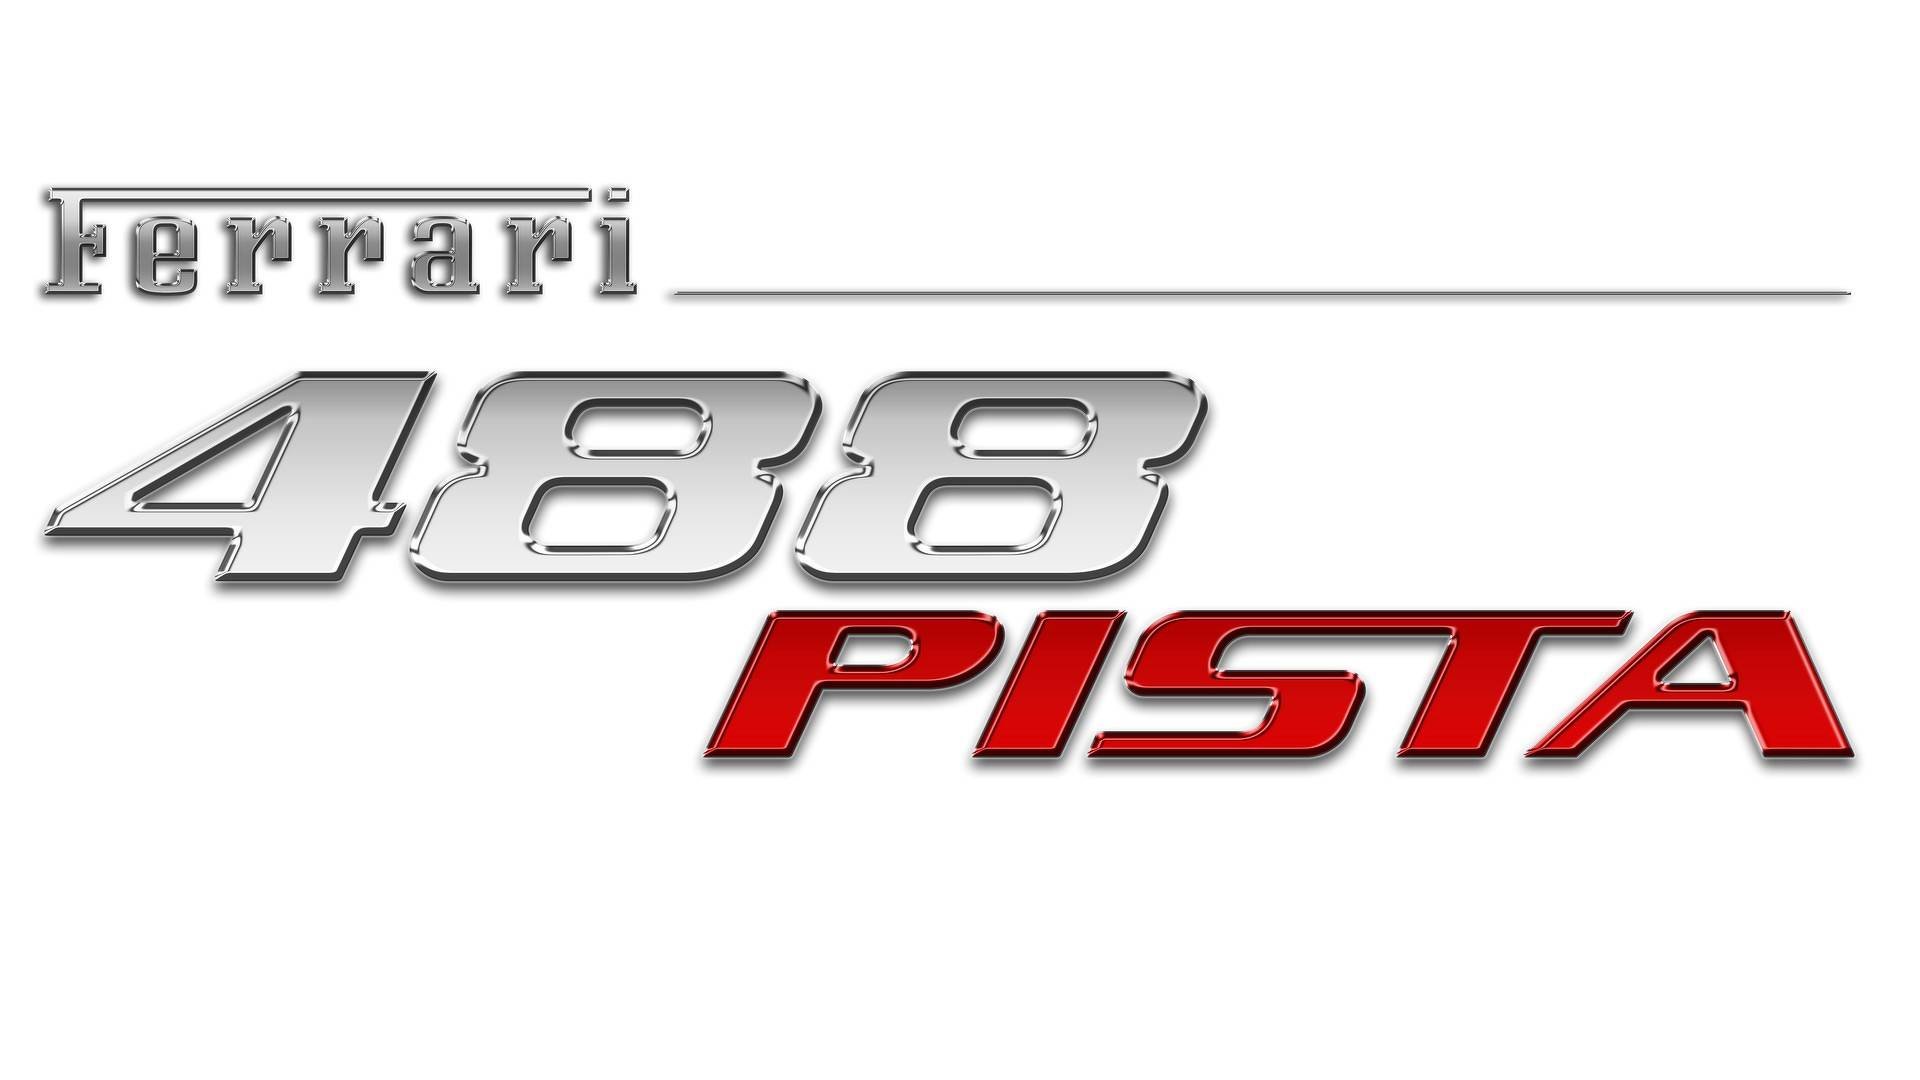 Oficiální snímky nového Ferrari 488 Pista